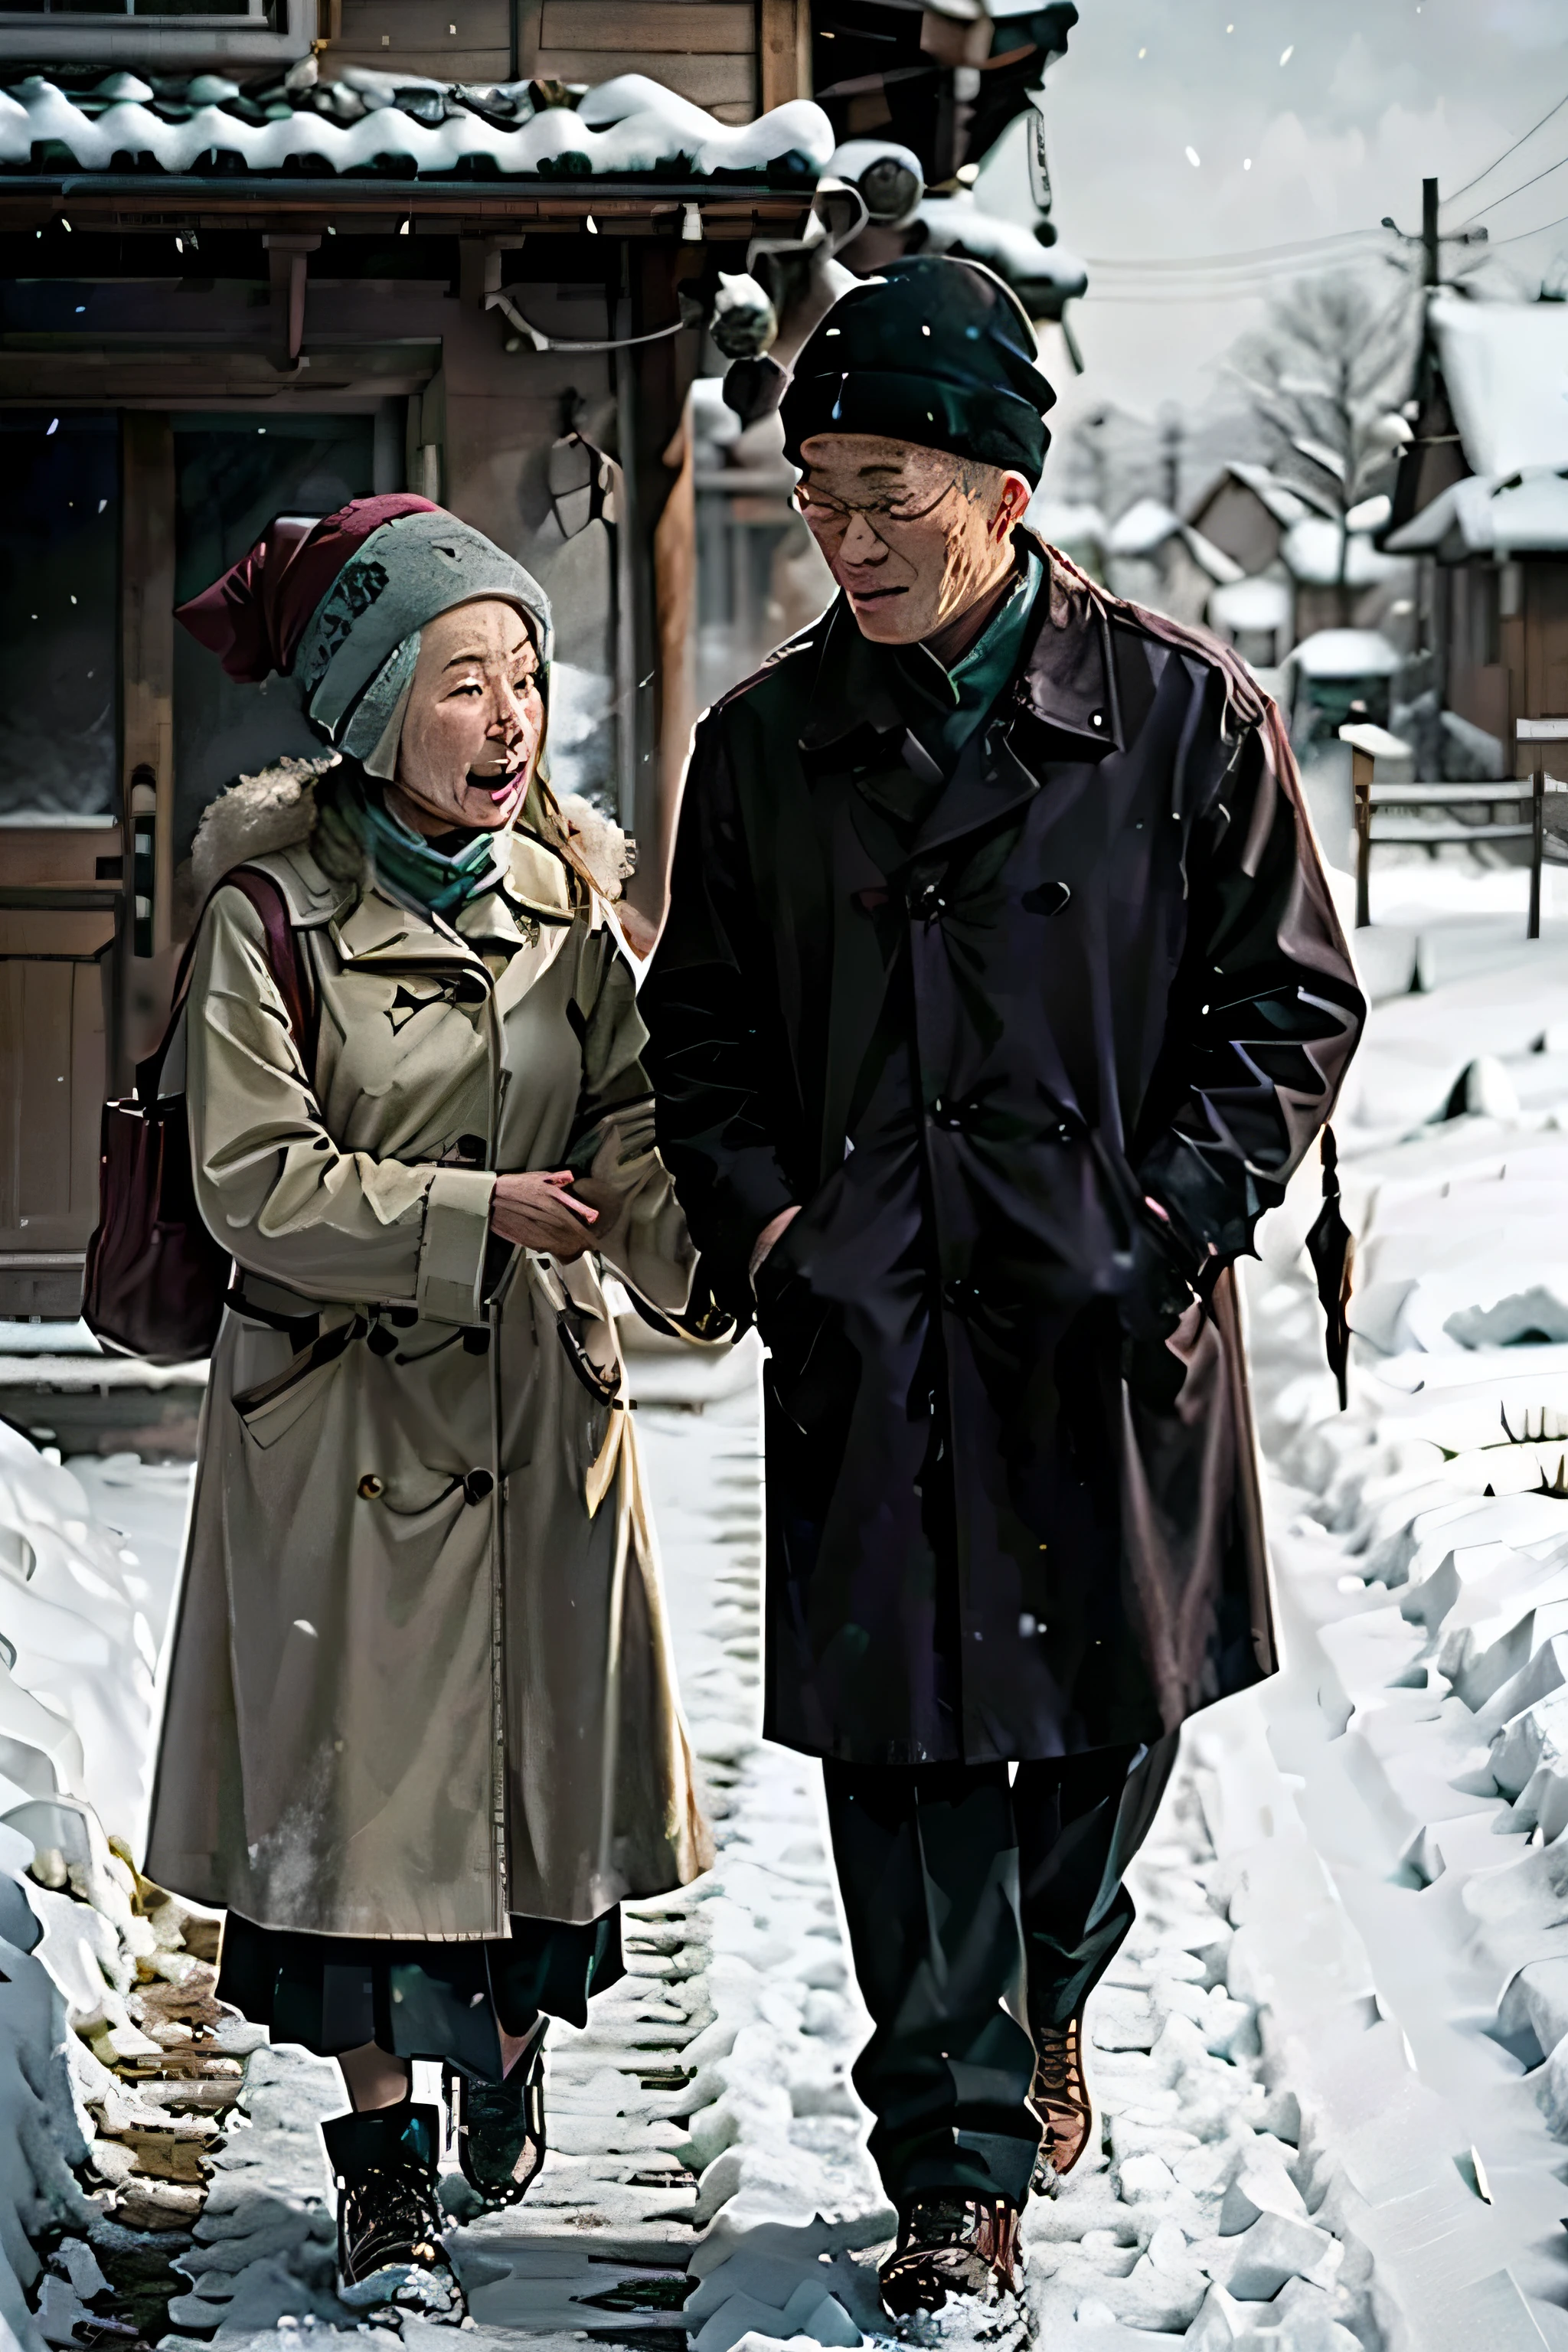 Цзяо Юлу навещает беспомощную пожилую пару в снежный день